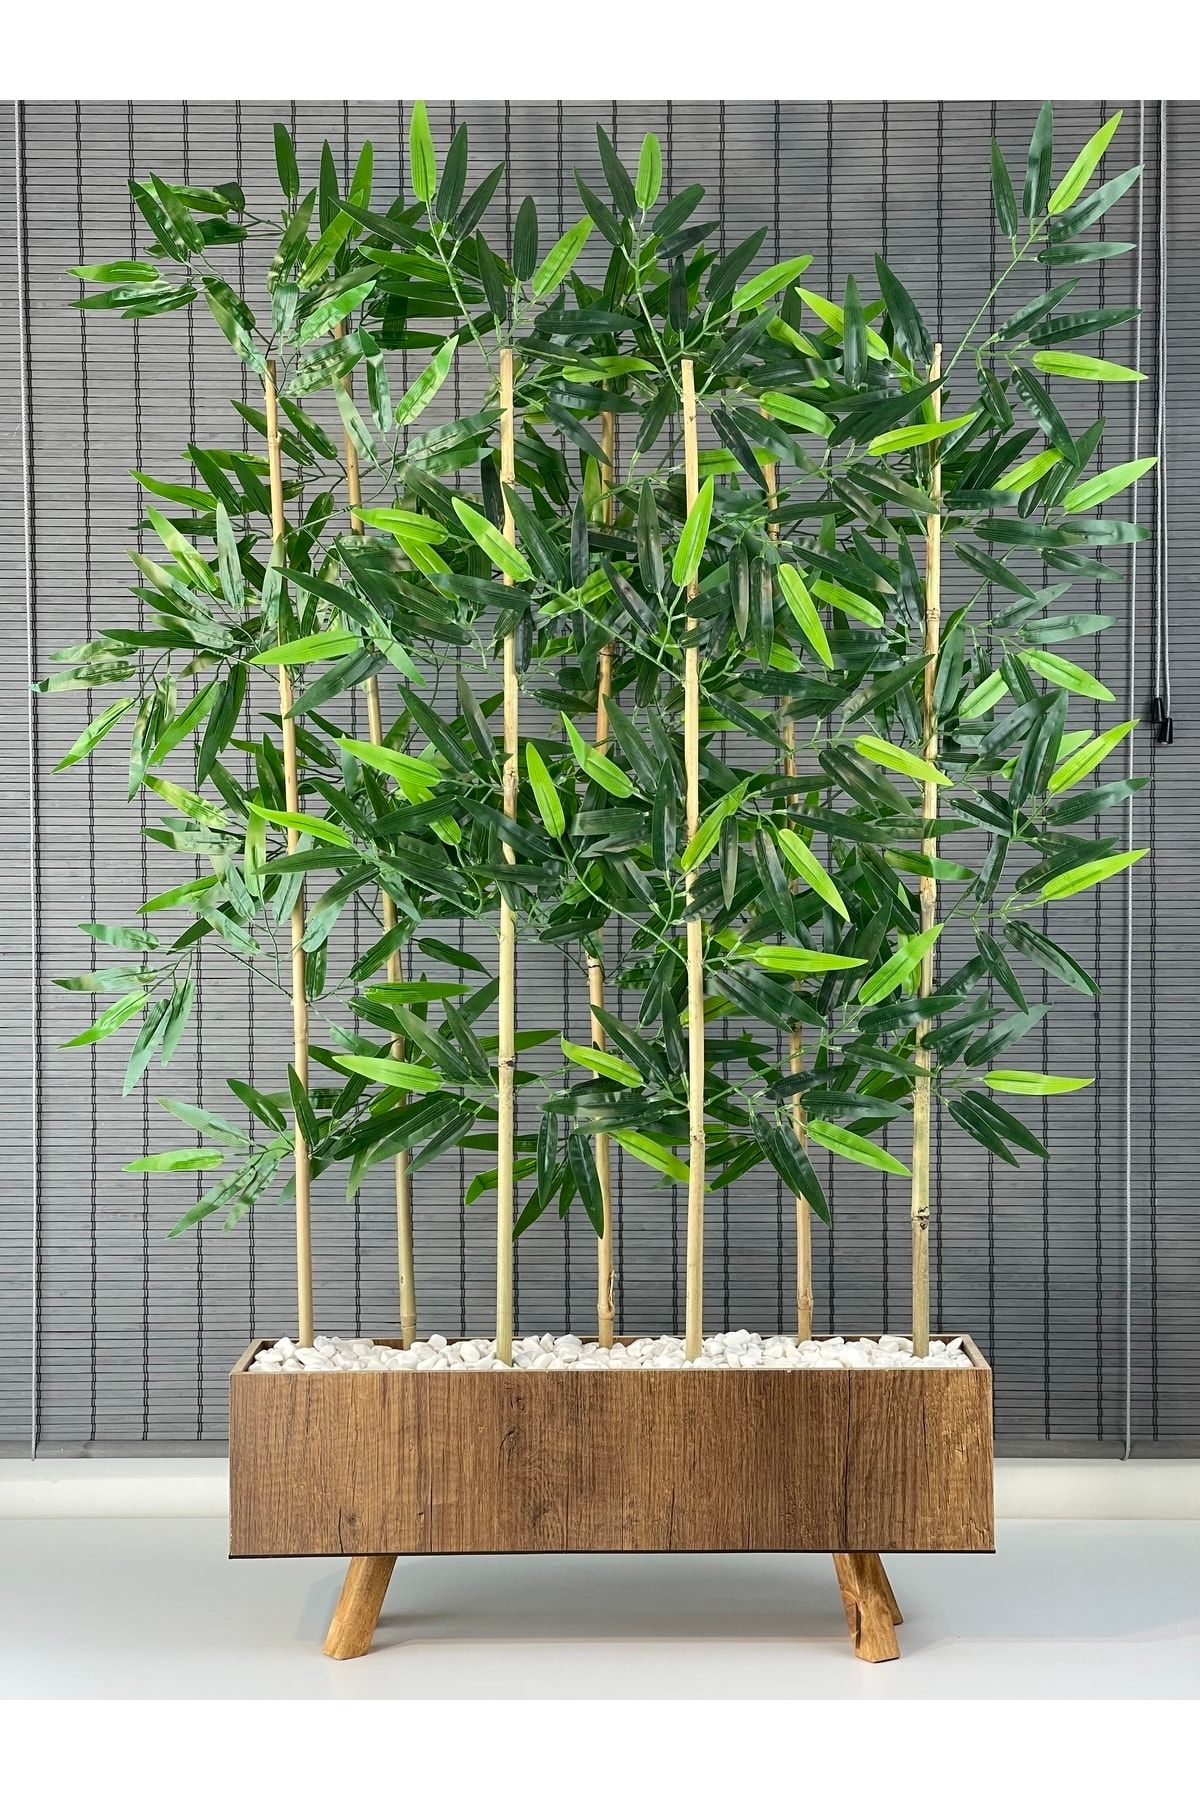 Bahçem Ahşap Ayaklı 60cm Saksılı 7 Gövde 125cm Dikdörtgen Model Yapay Yapraklı Dekoratif Bambu Seperatör